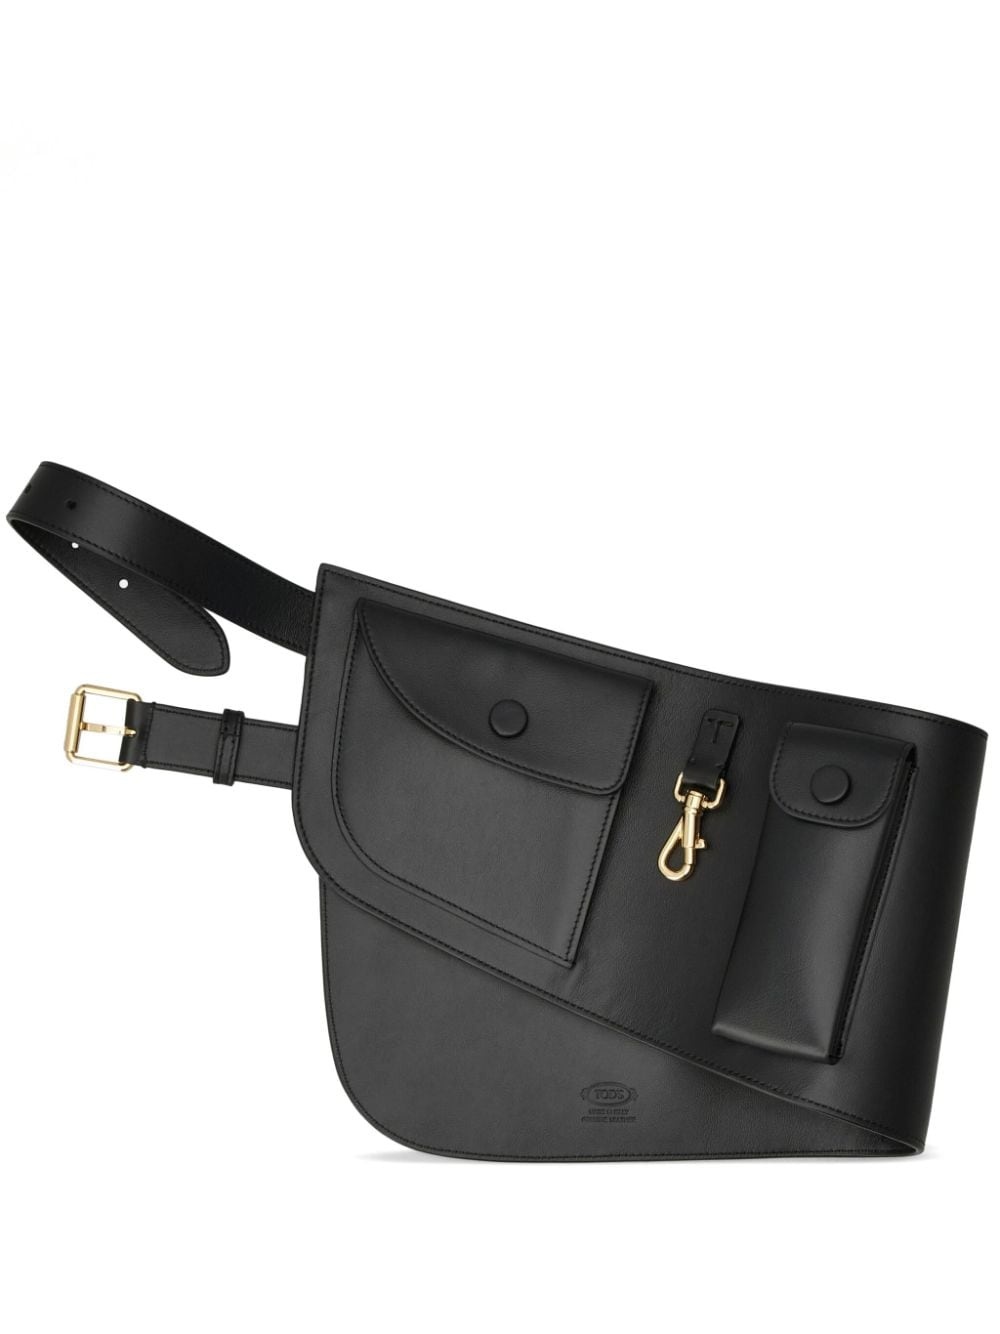 leather belt bag - 1